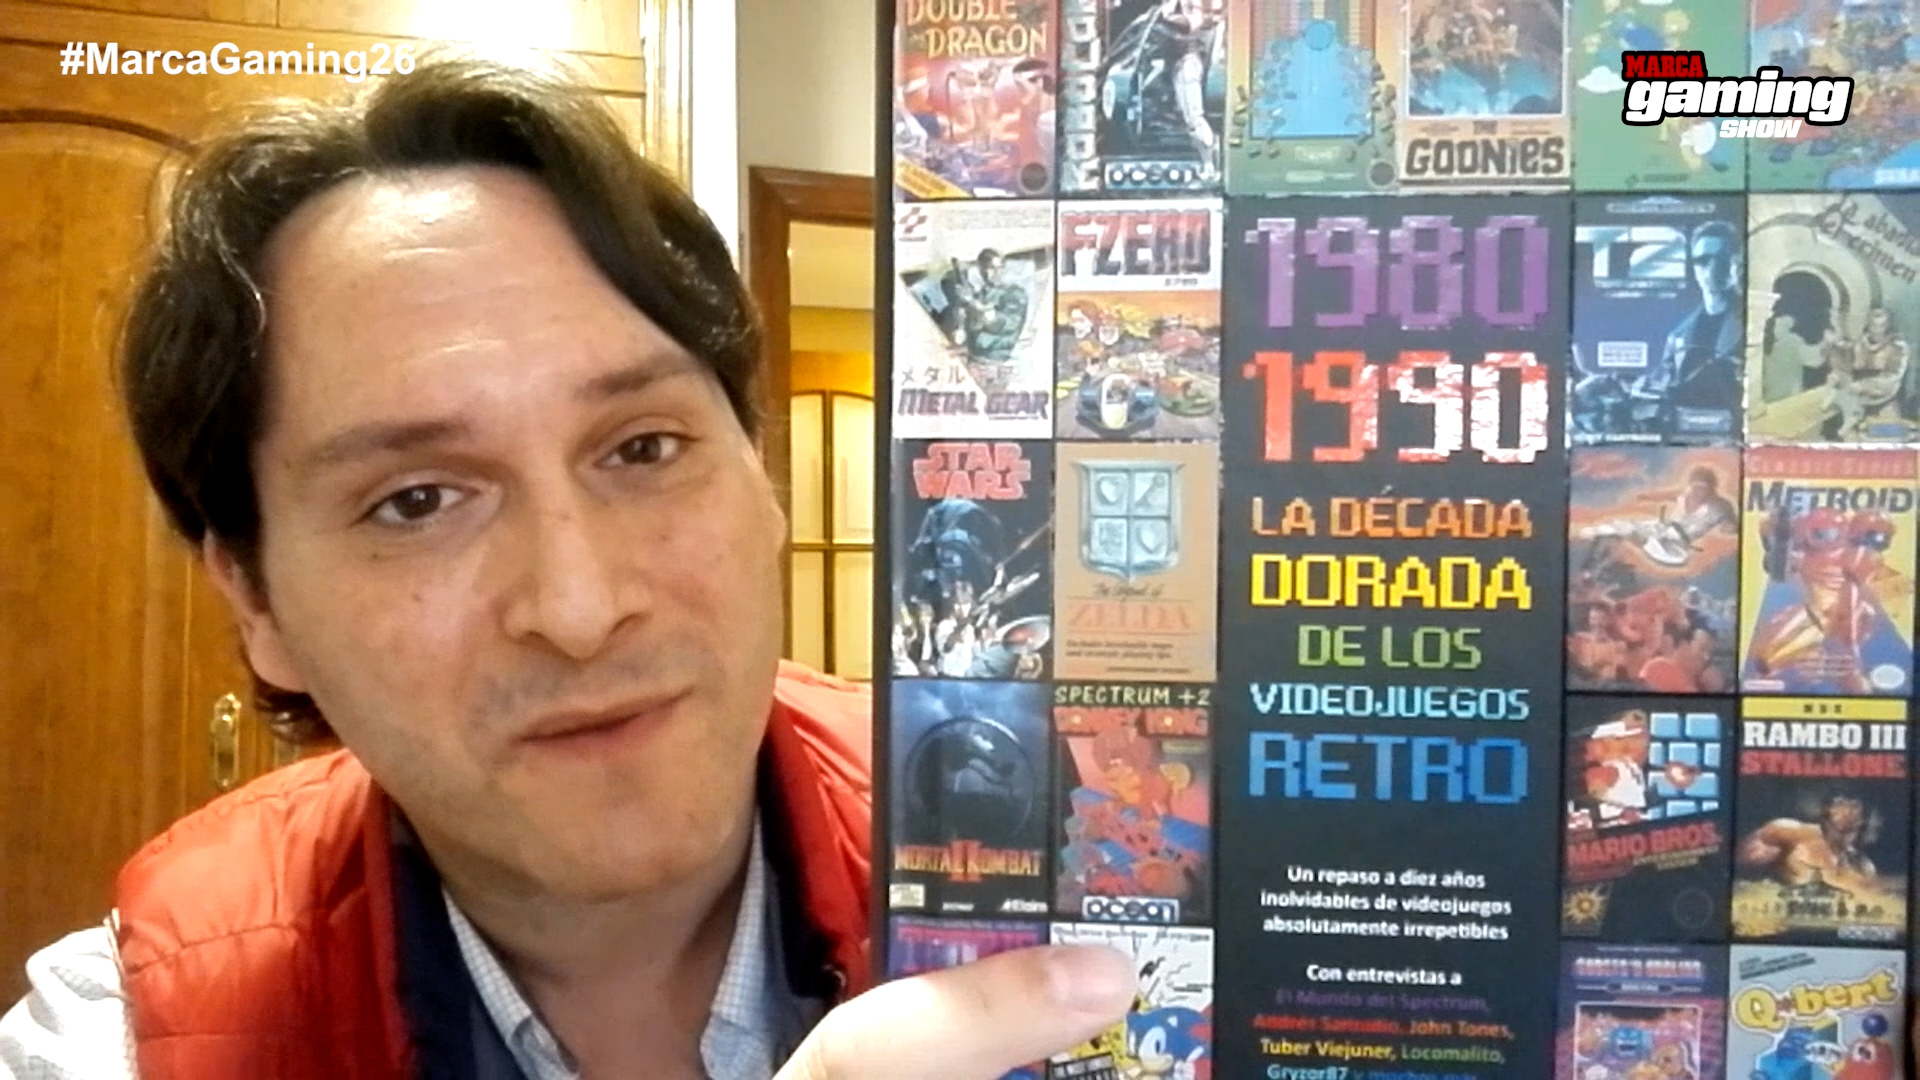 "1980-1990: La dcada dorada de los videojuegos retro" por Enrique Segura